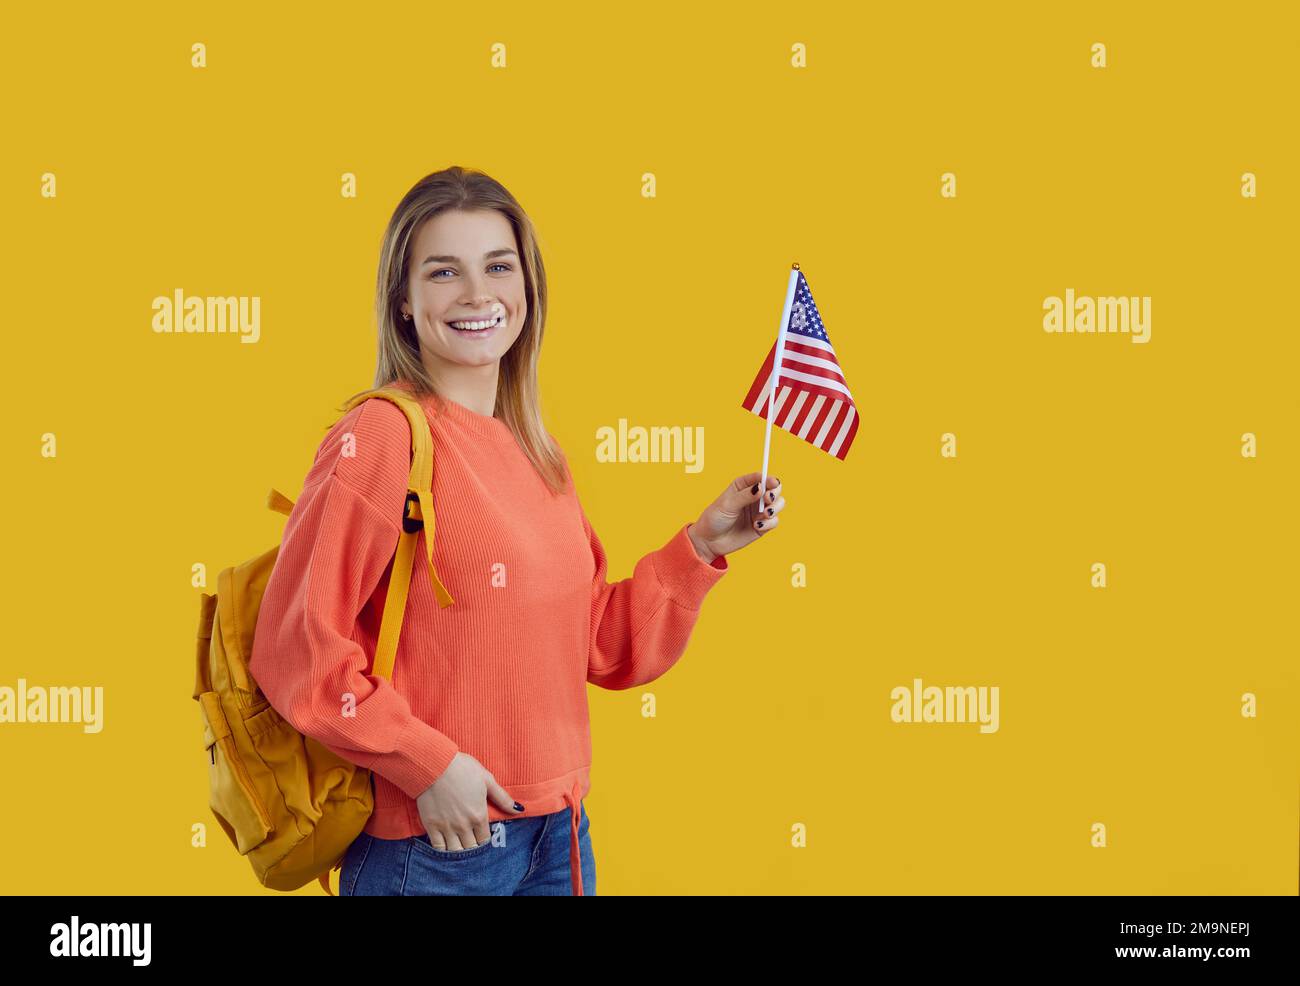 Felice studente universitario in piedi su sfondo giallo, tenendo la bandiera americana e sorridendo Foto Stock